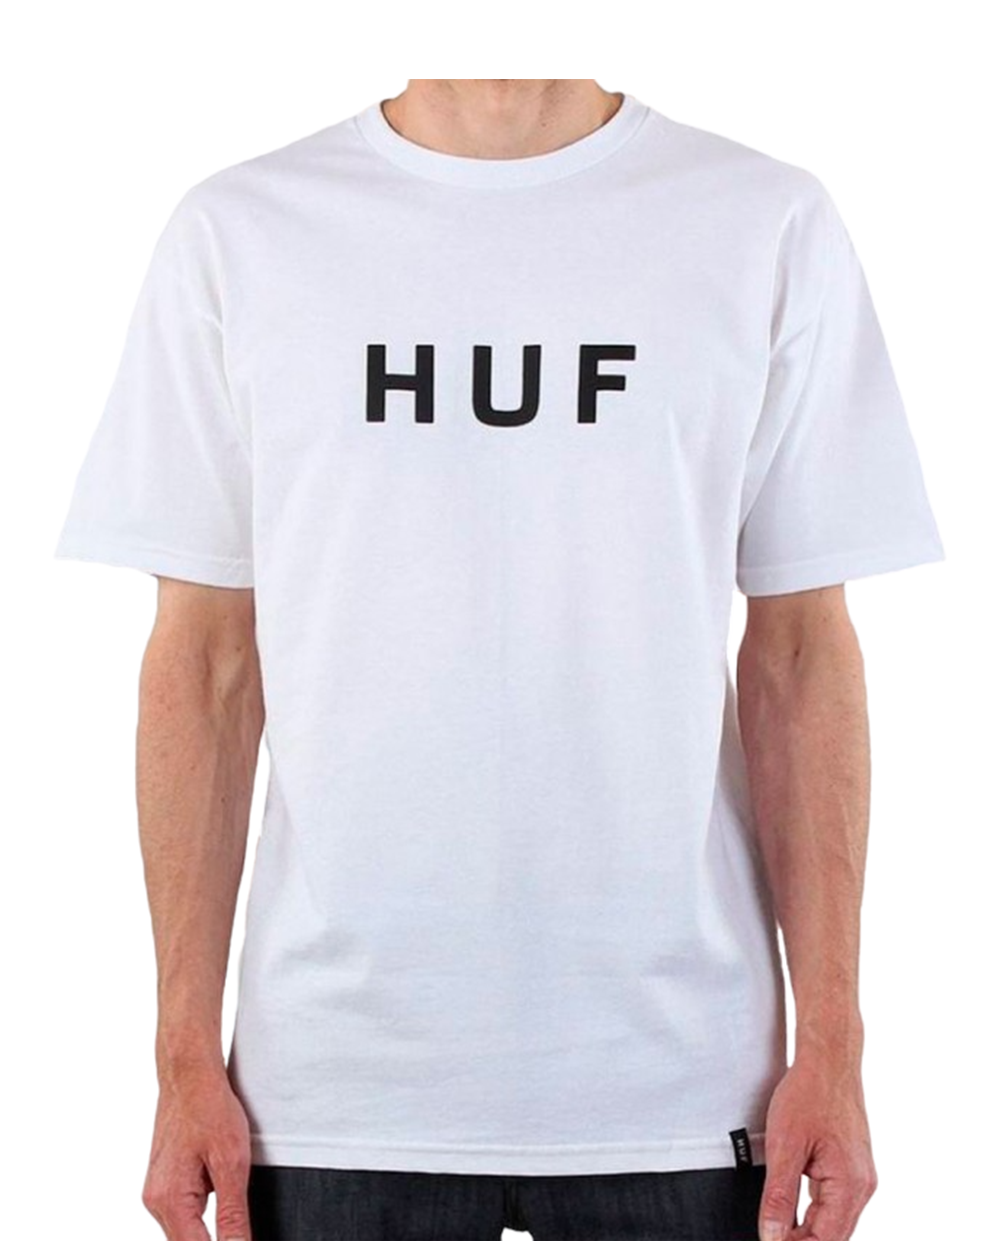 T-Shirt Huf Original